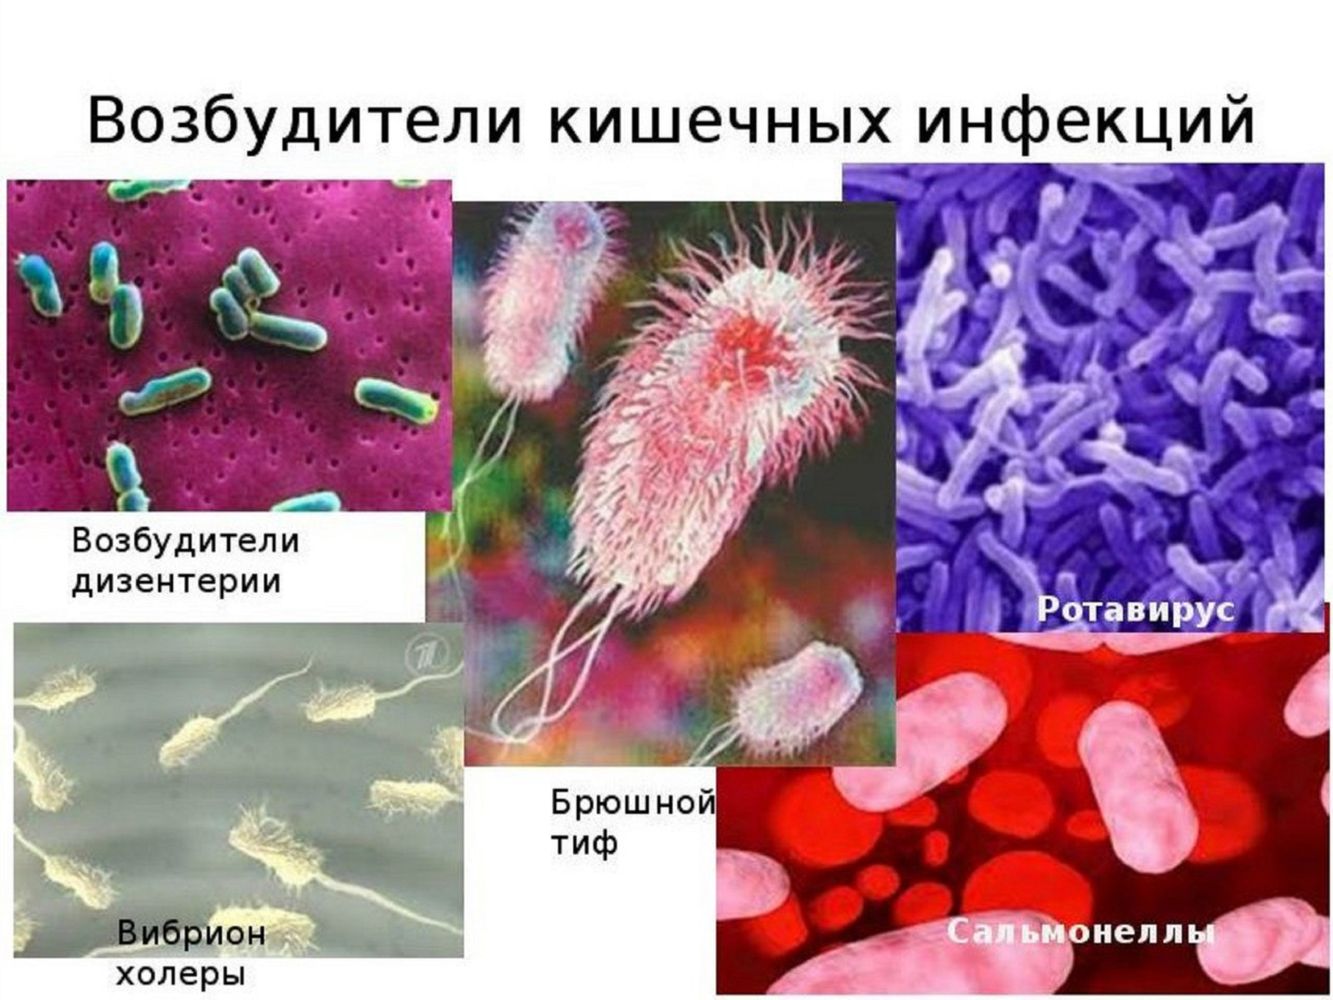 Микроорганизмы способные вызывать заболевания. Острые кишечные инфекции бактерии возбудители. Возбудители бактериальных инфекций бациллы. Микробы возбудители инфекционных заболеваний.